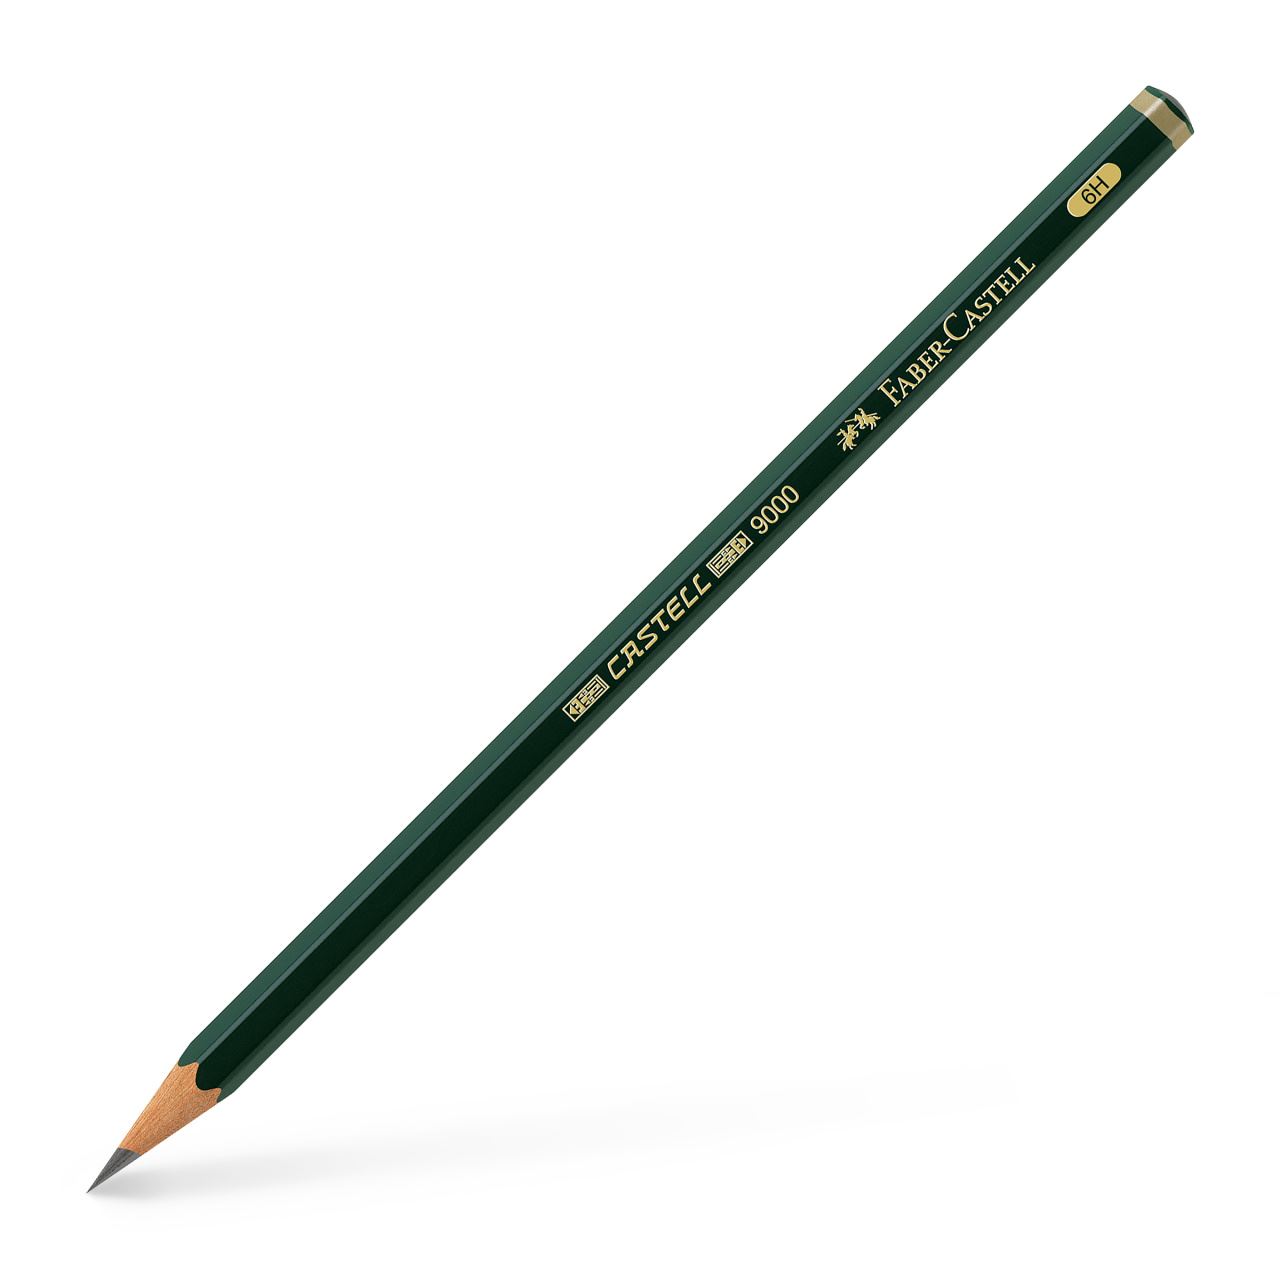 Faber-Castell - Castell 9000 Bleistift, 6H